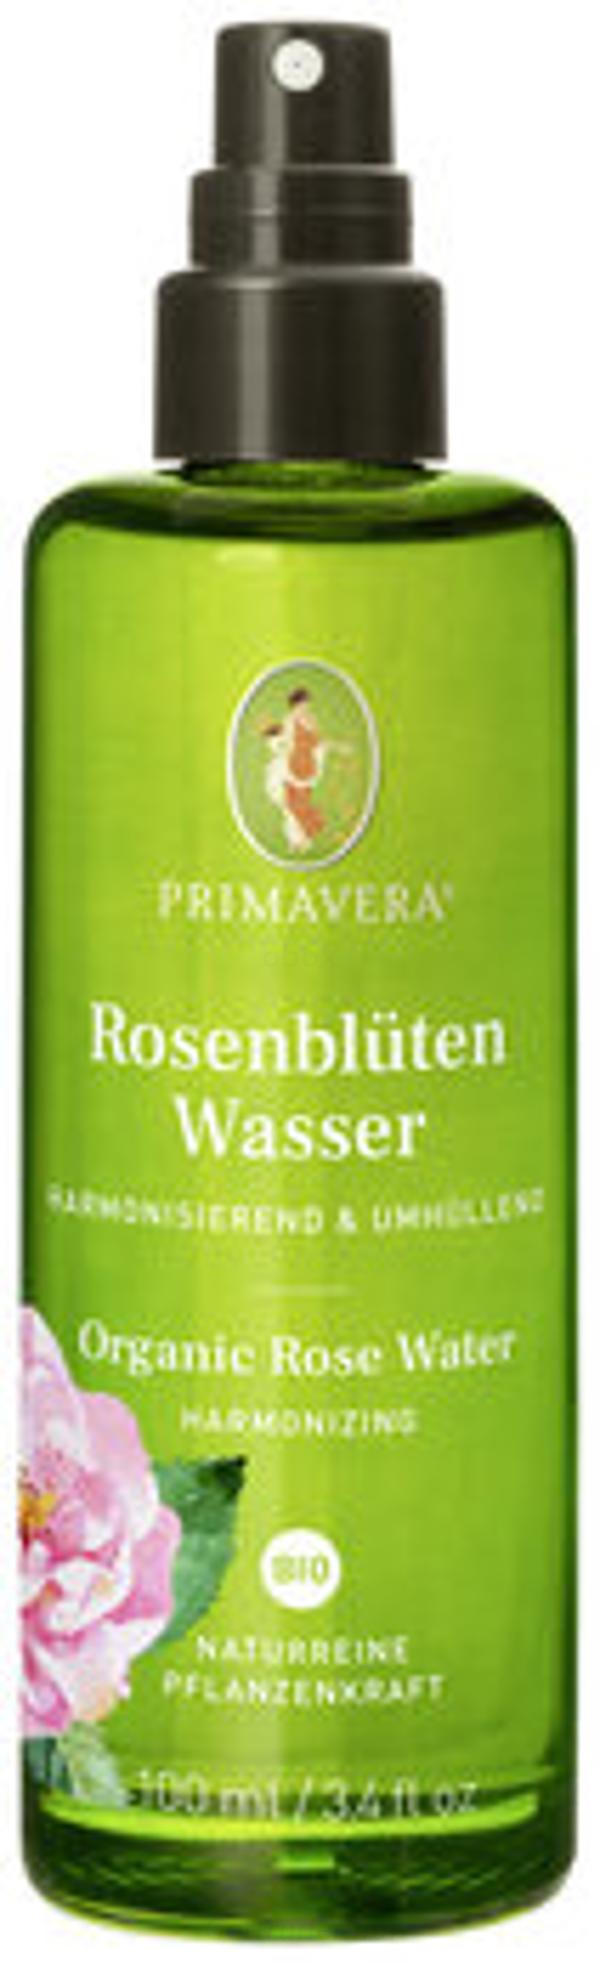 Produktfoto zu Rosenblütenwasser 100 ml (PVL)